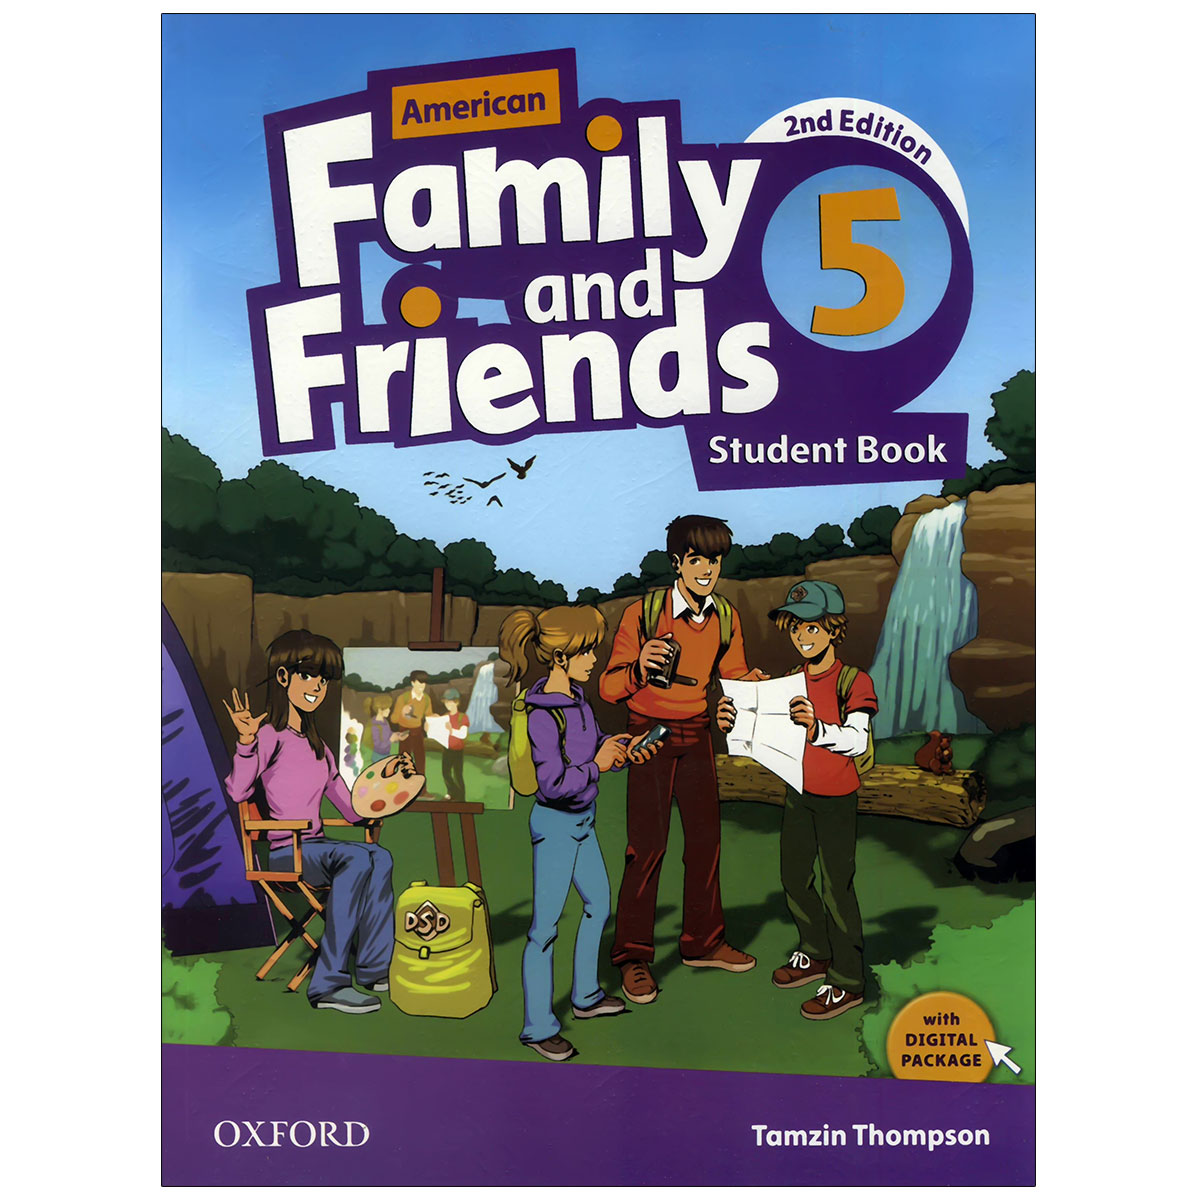 نقد و بررسی کتاب American Family and Friends 2nd 5 اثر جمعی از نویسندگان انتشارات اکسفورد توسط خریداران